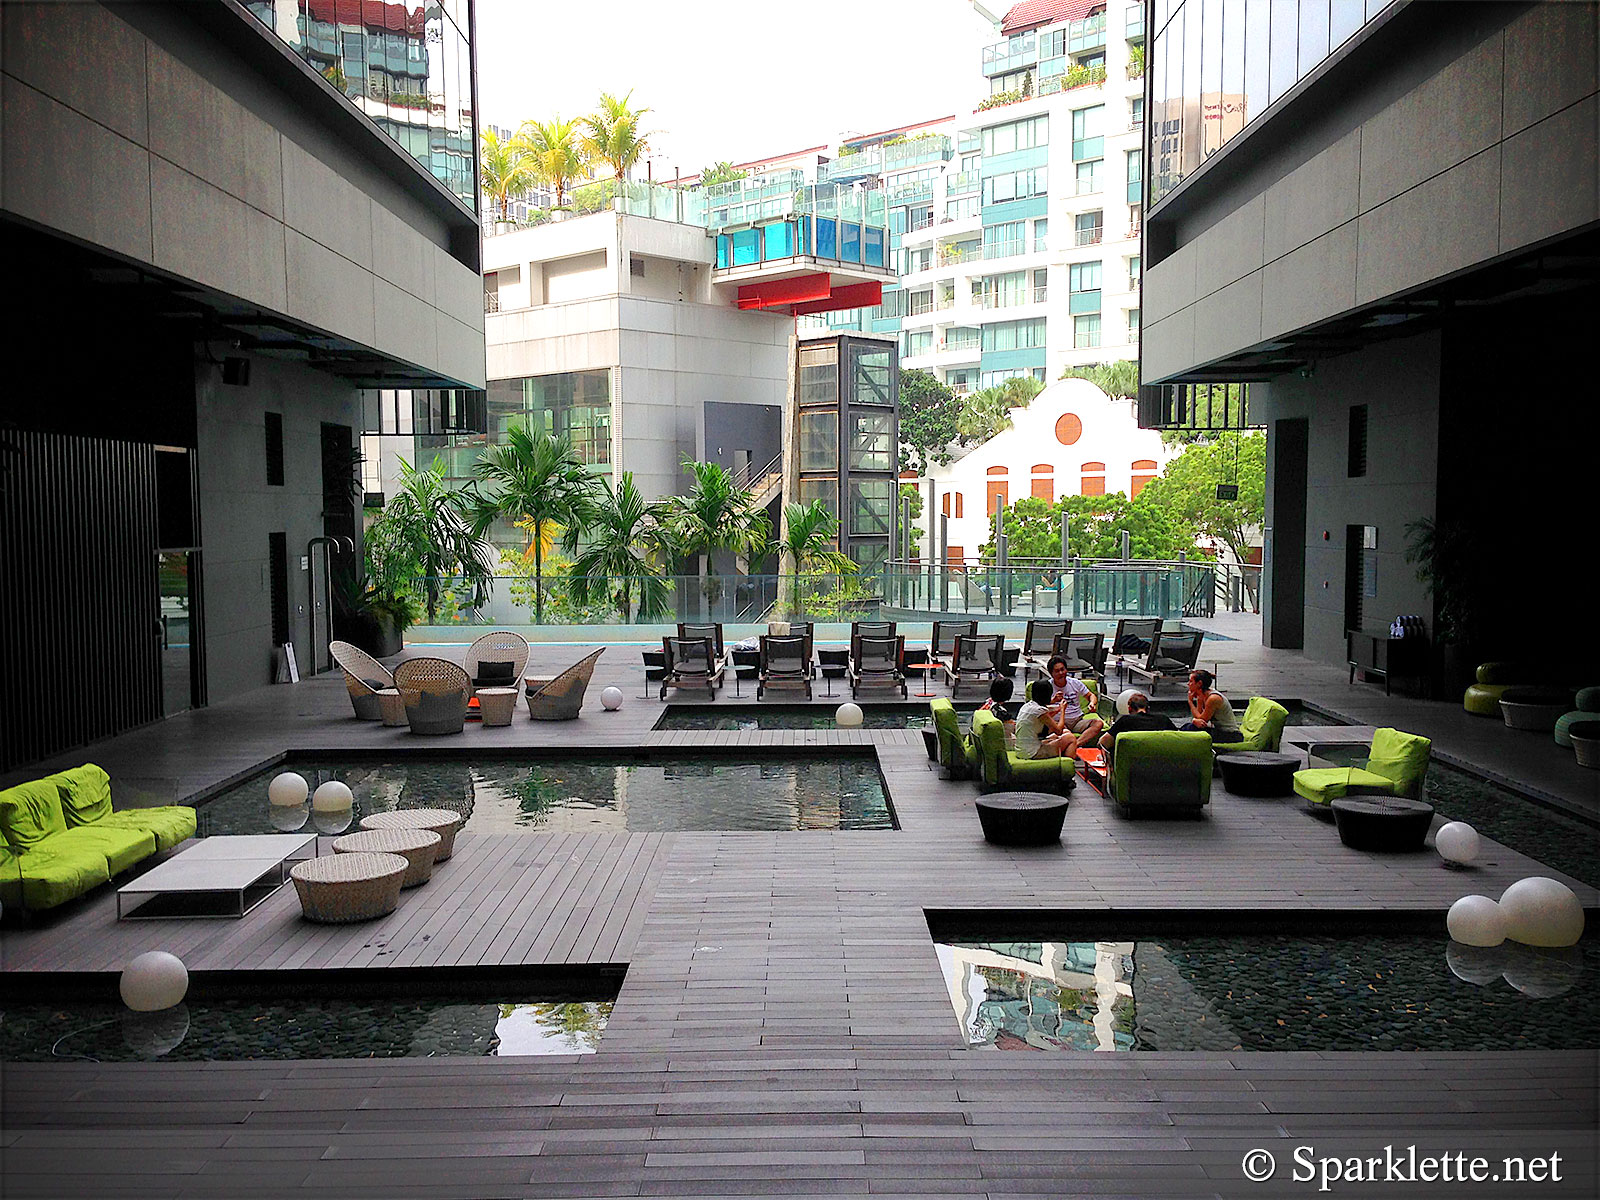 Studio M Hotel Singapore